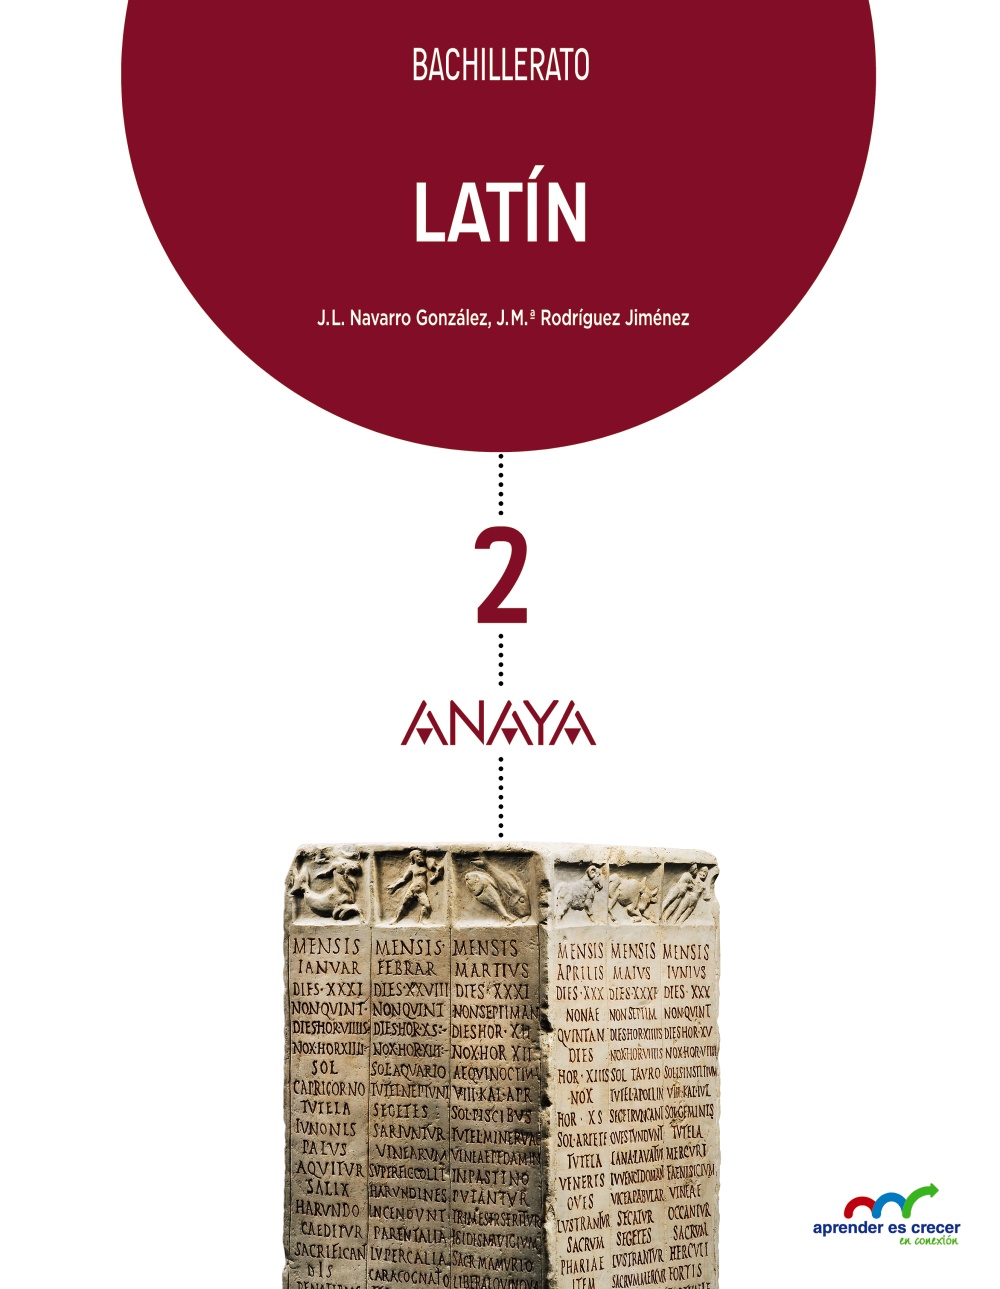 Solucionario Latin 2 Bachillerato Anaya Aprender es Crecer PDF Ejercicios Resueltos-pdf